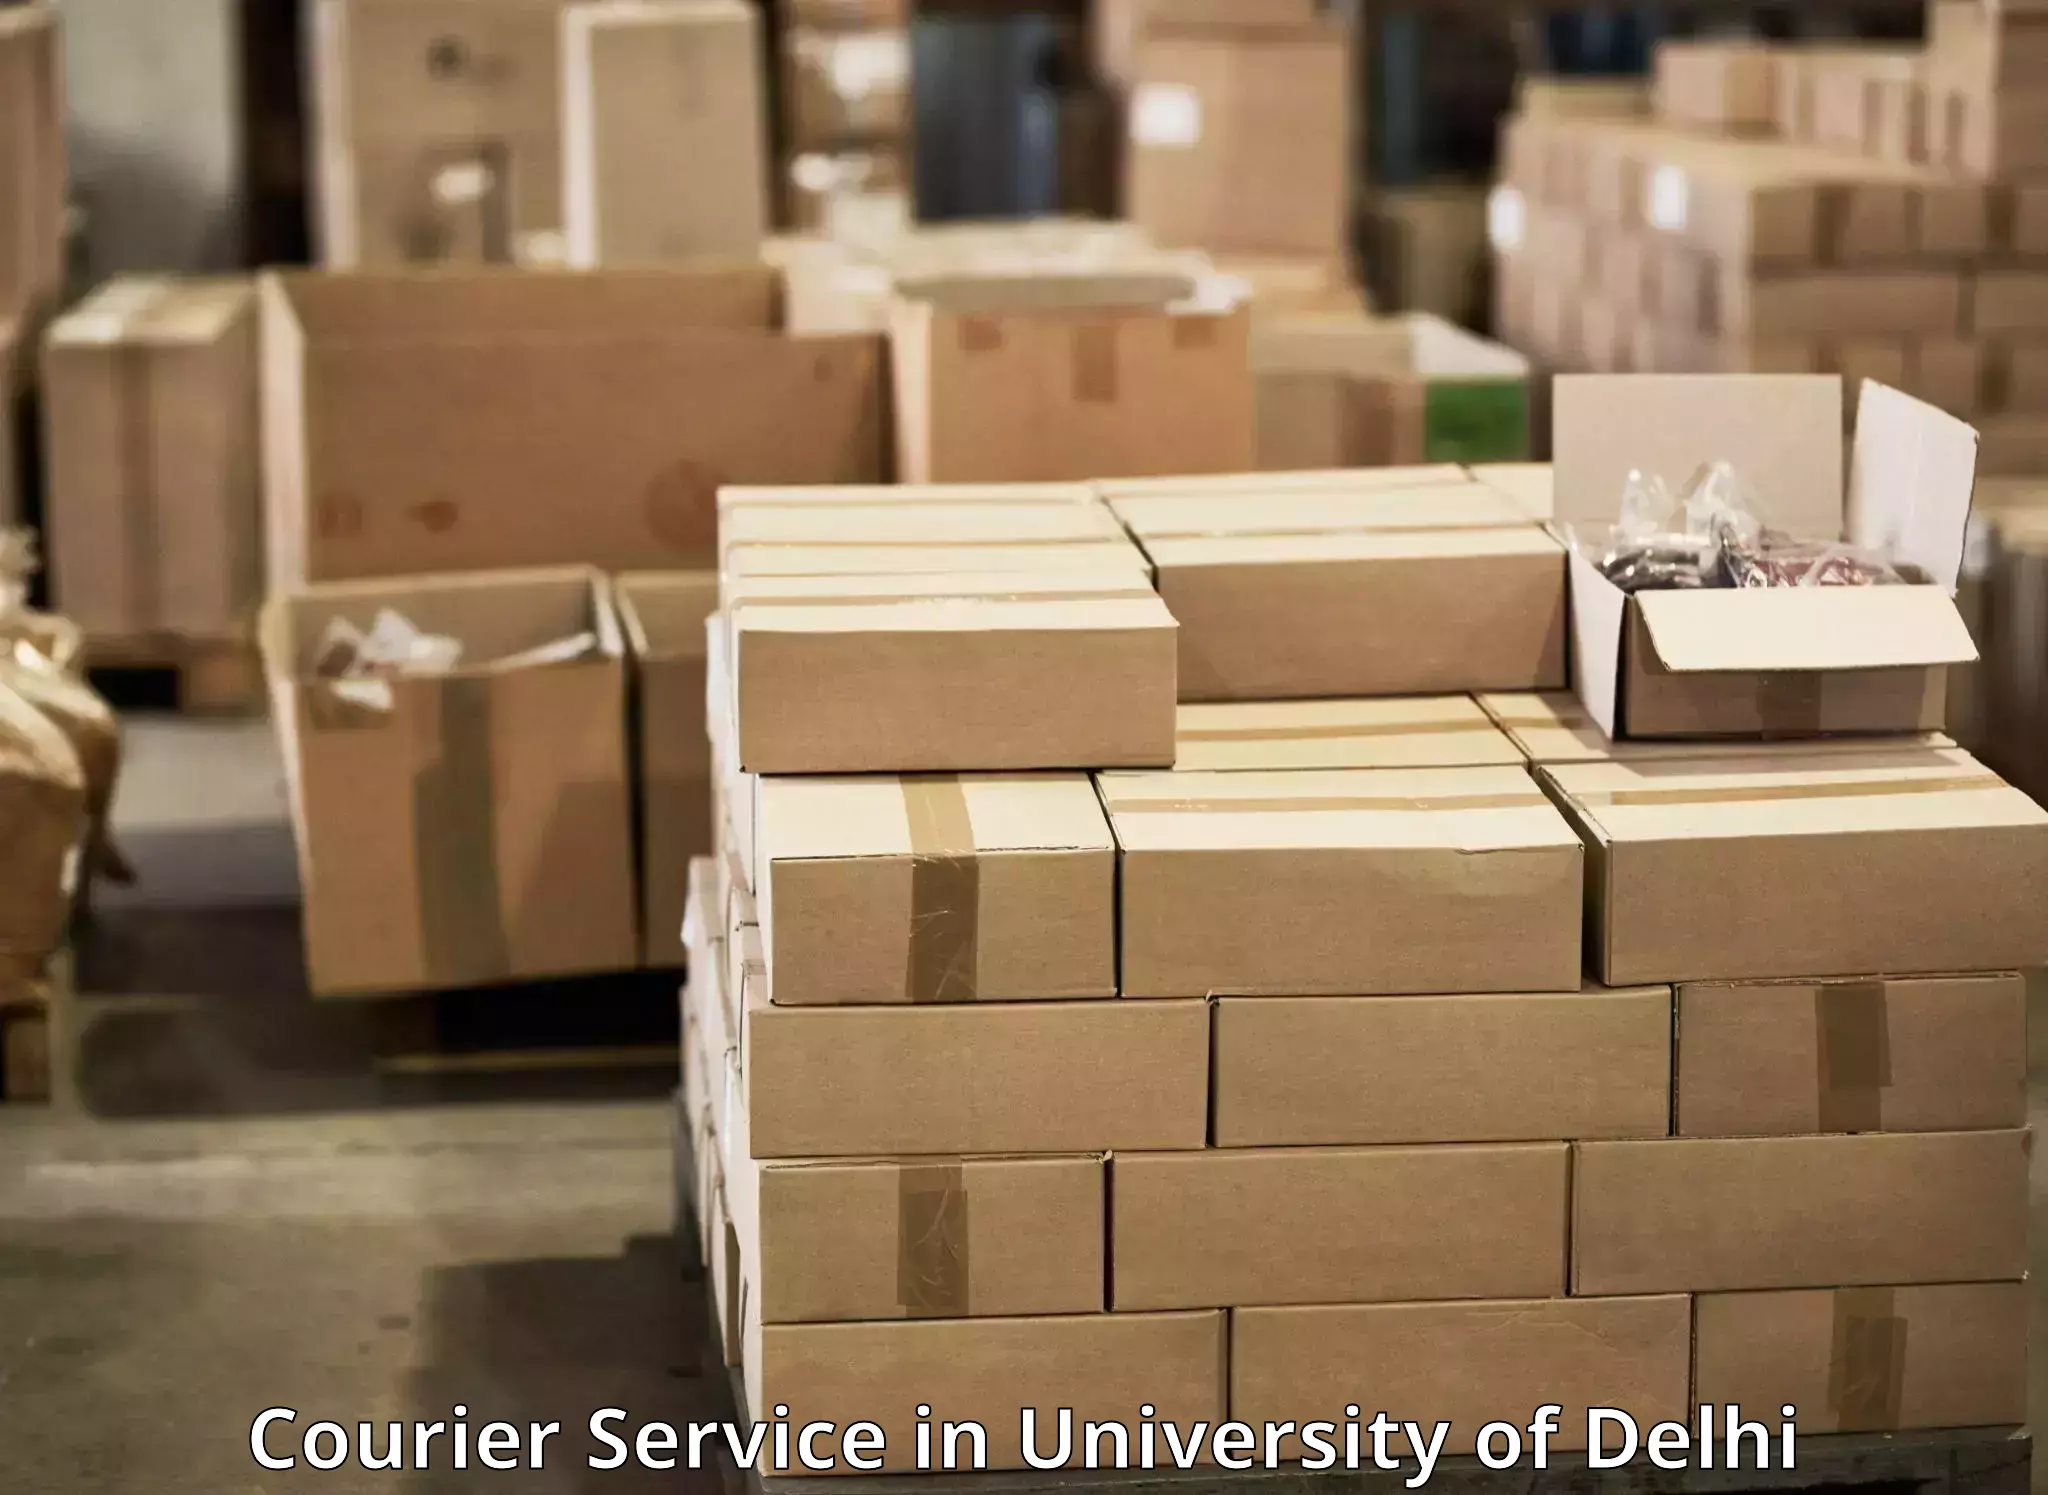 Versatile courier options in University of Delhi